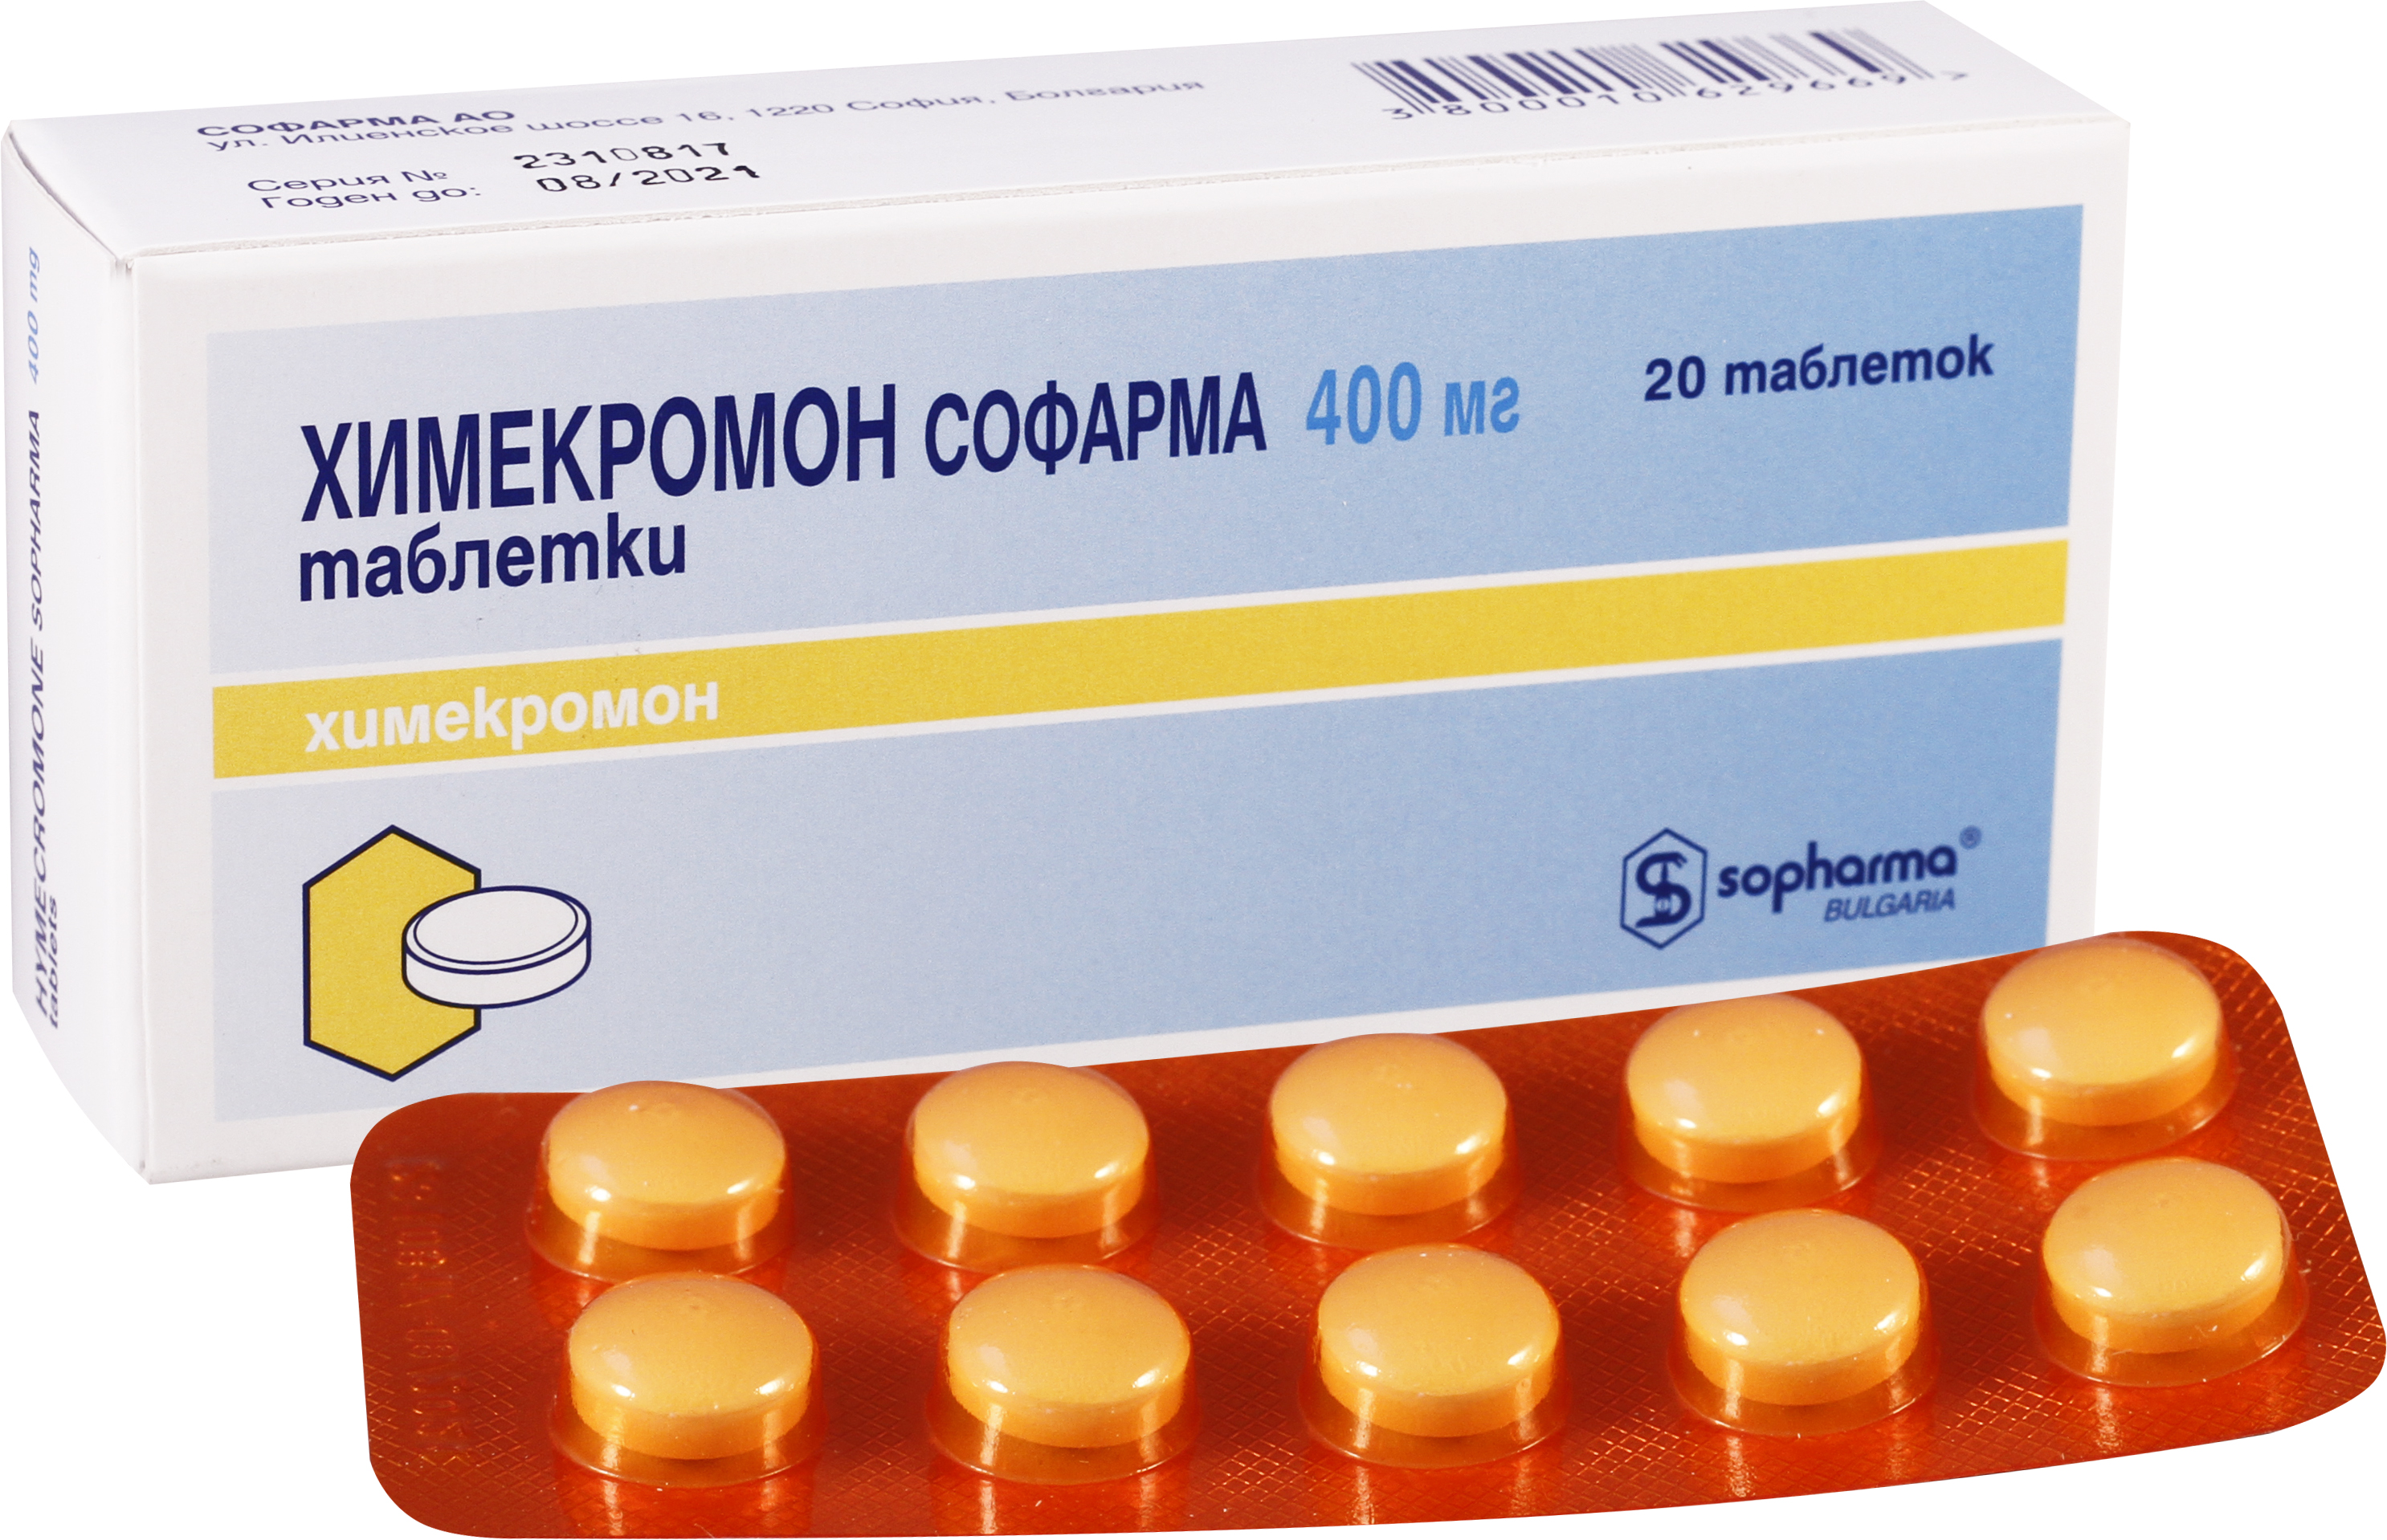 ჰიმეკრომონ სოფარმა / HYMECROMONE SOPHARMA